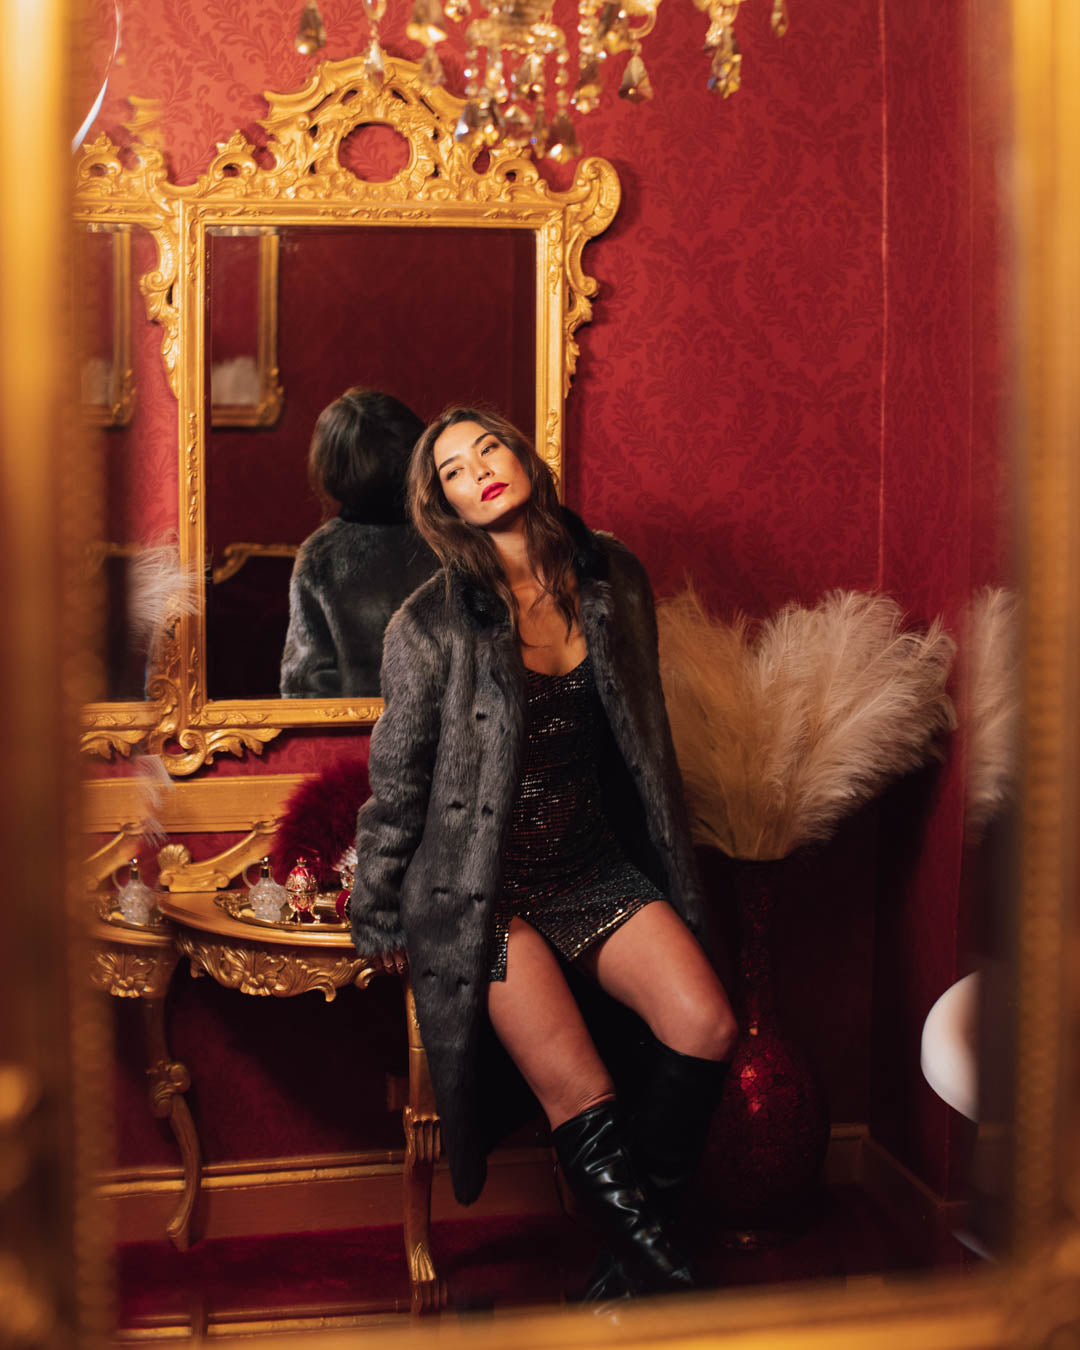 Grey Fox Calf Length Faux Fur Coat | Women&#39;s